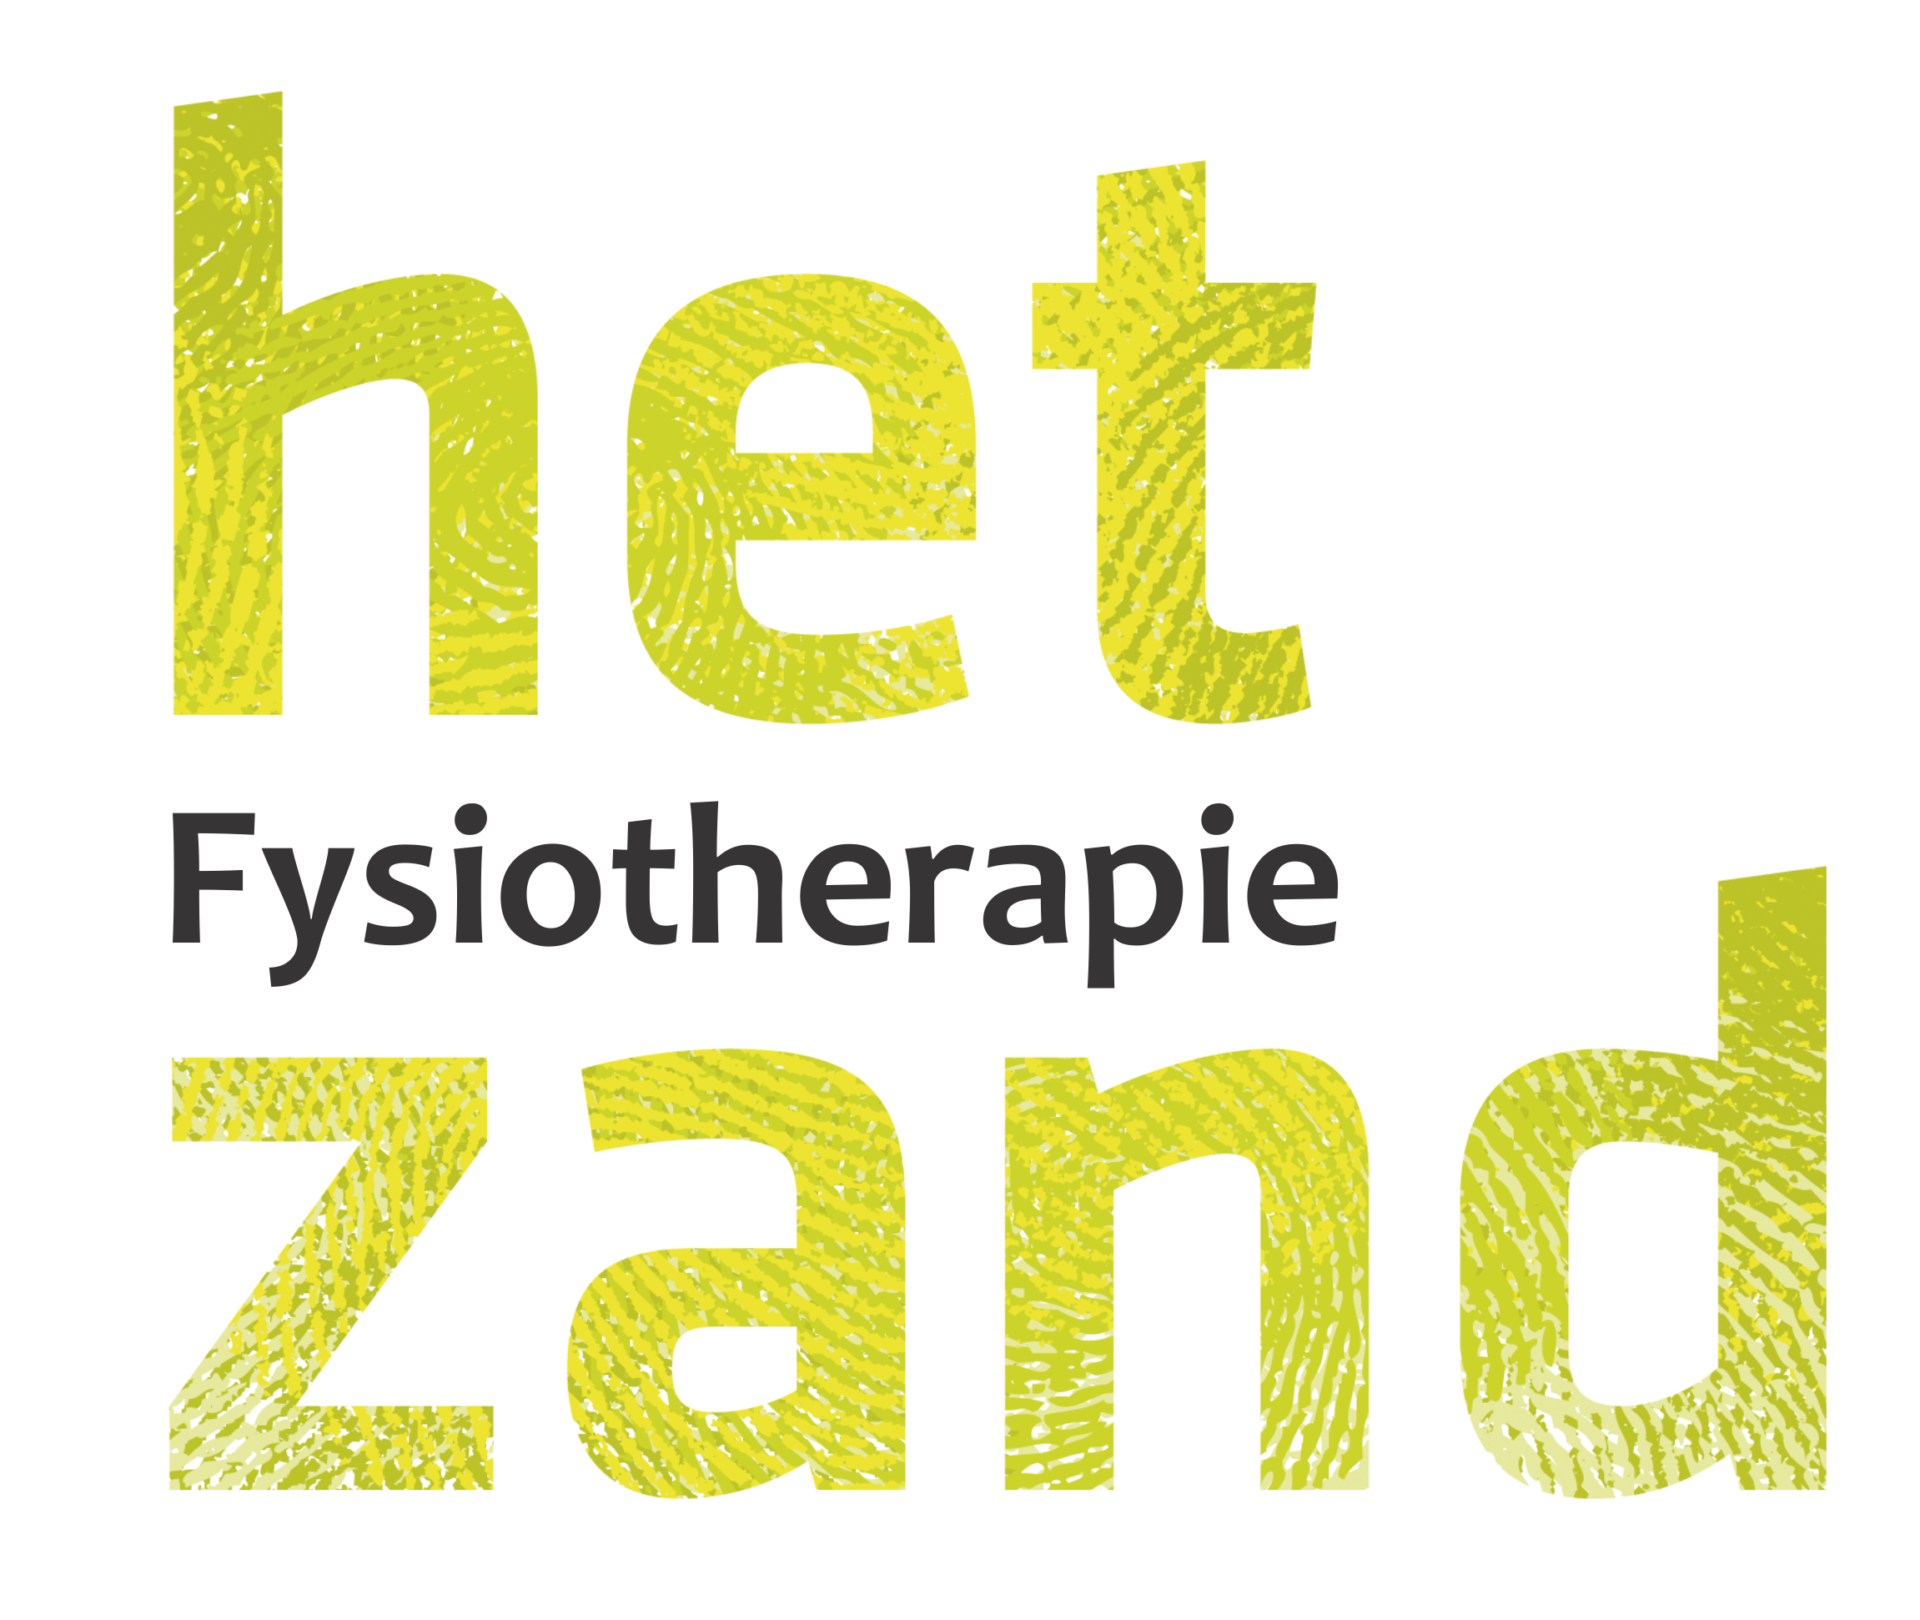 (c) Fysiotherapiehetzand.nl